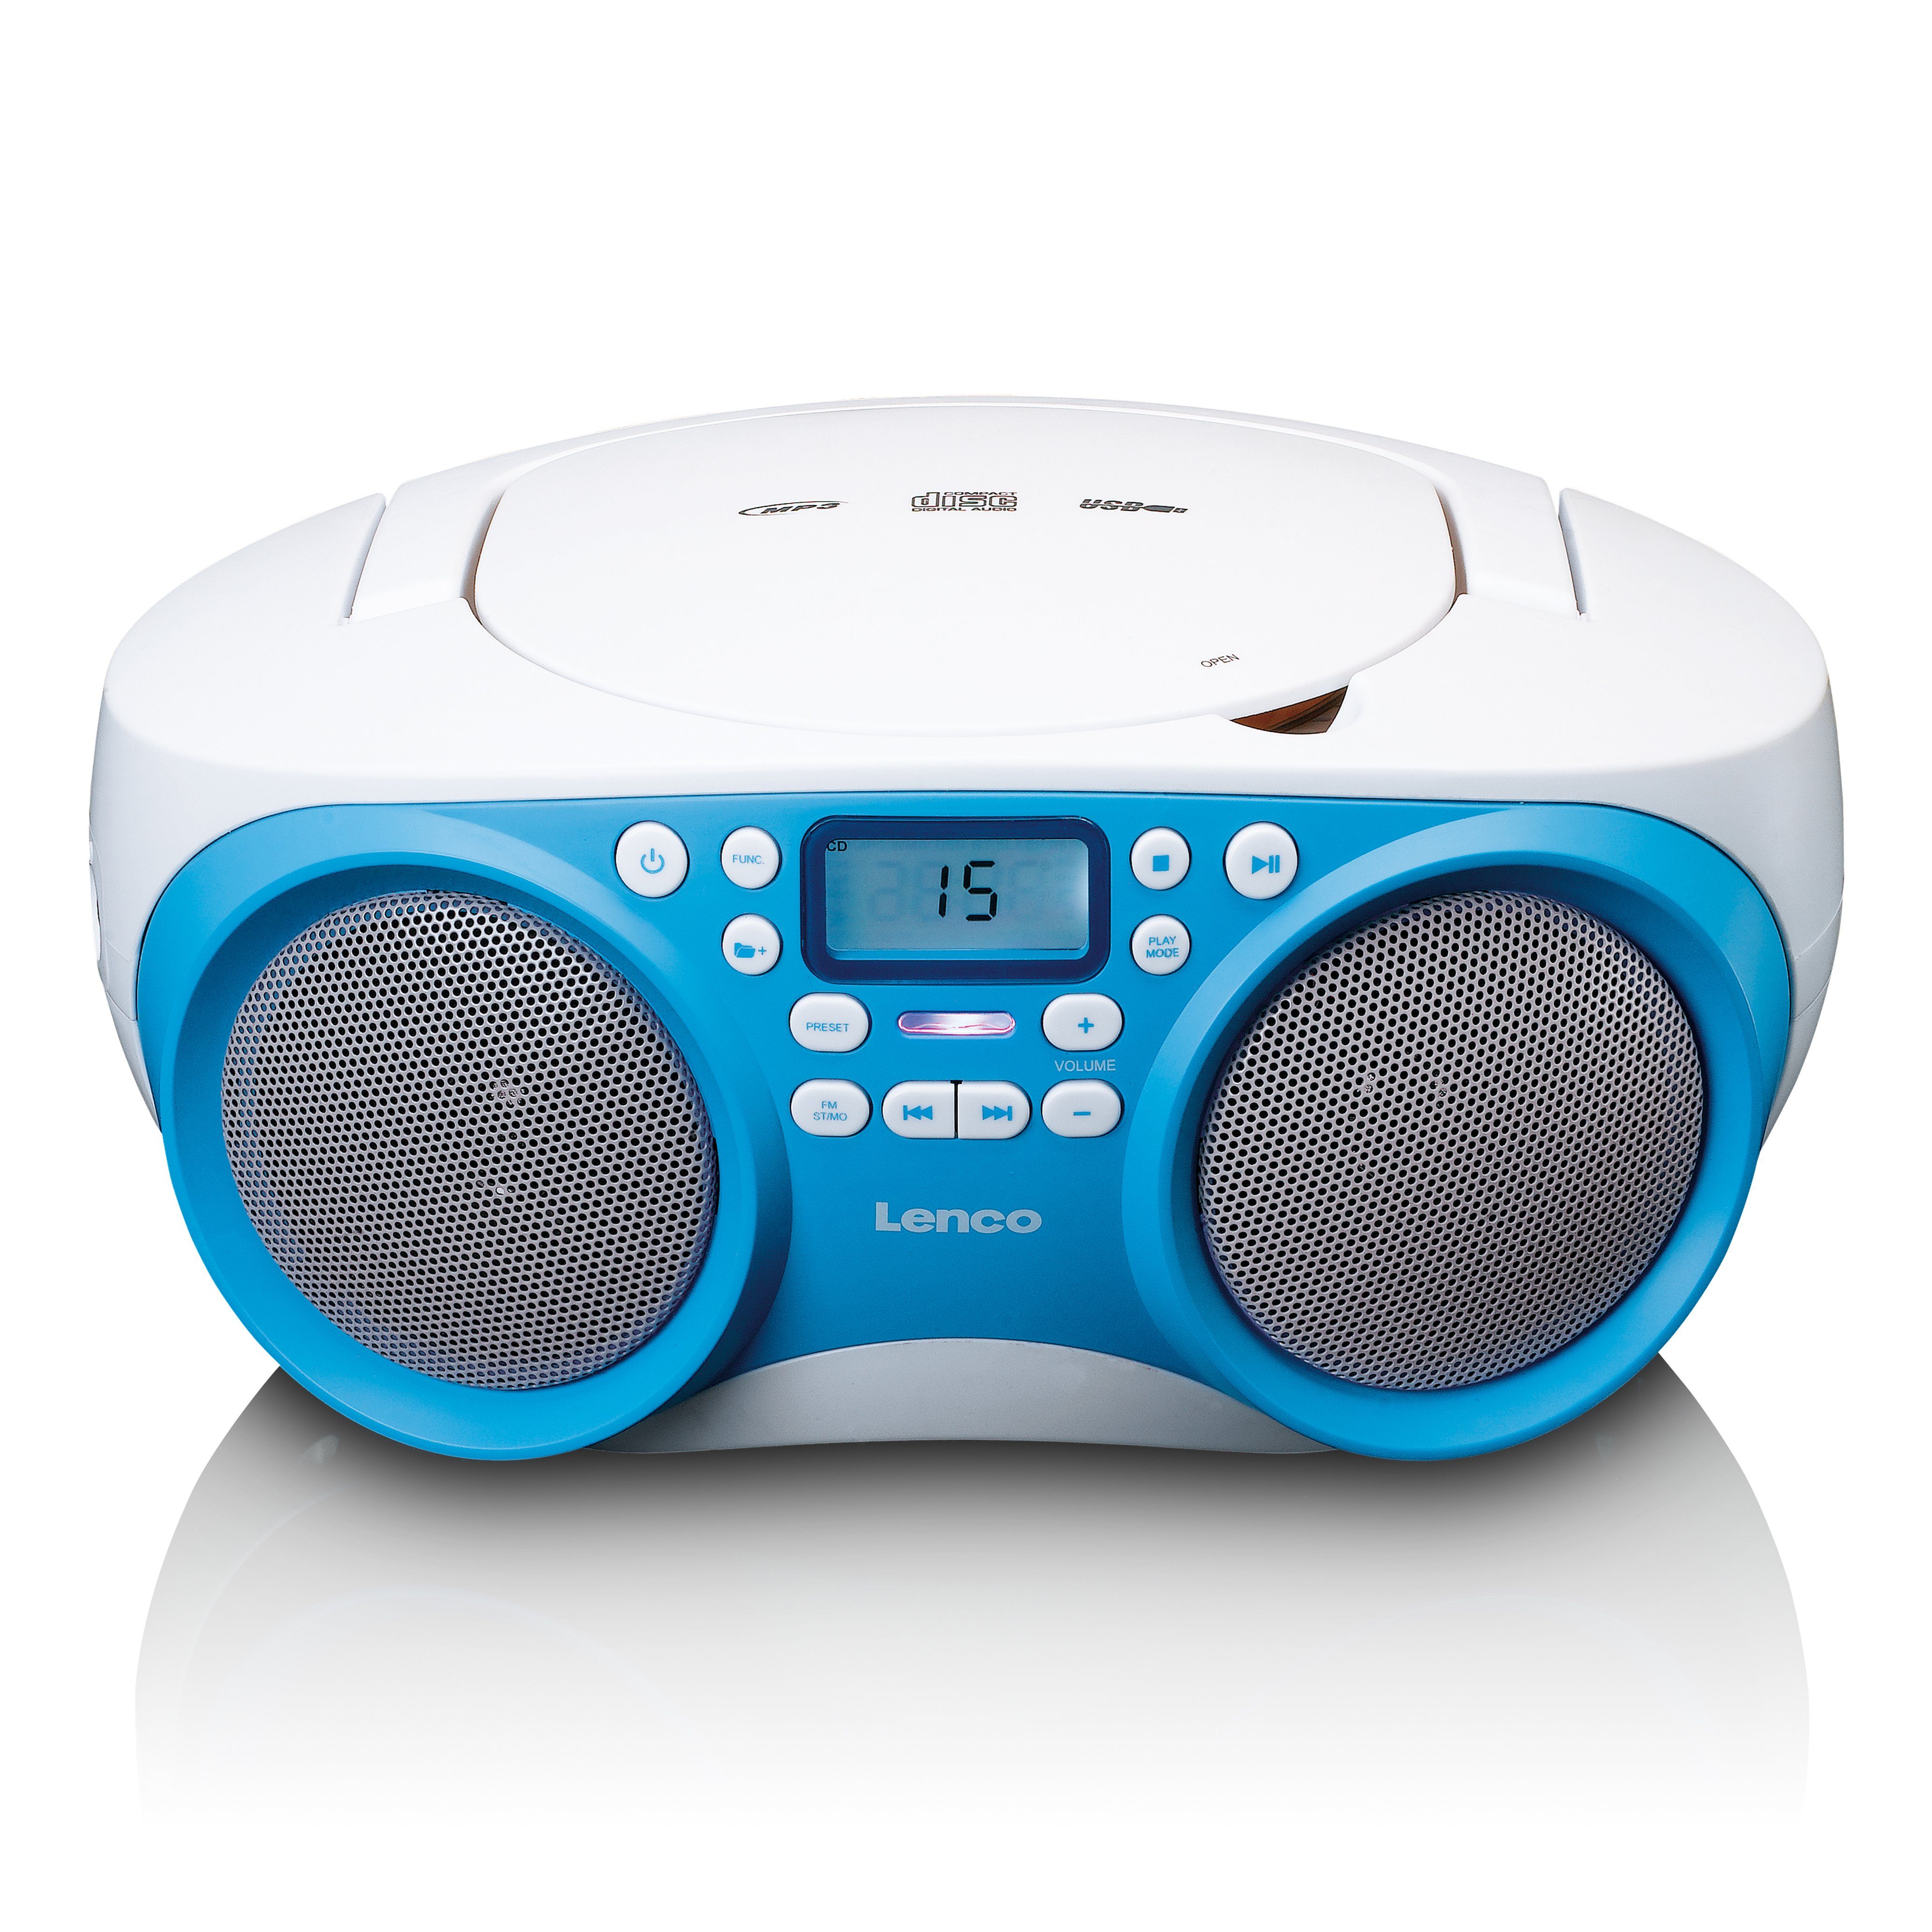 SCD-301BU (FM) CD-Radiorecorder Lenco Weiß-Blau